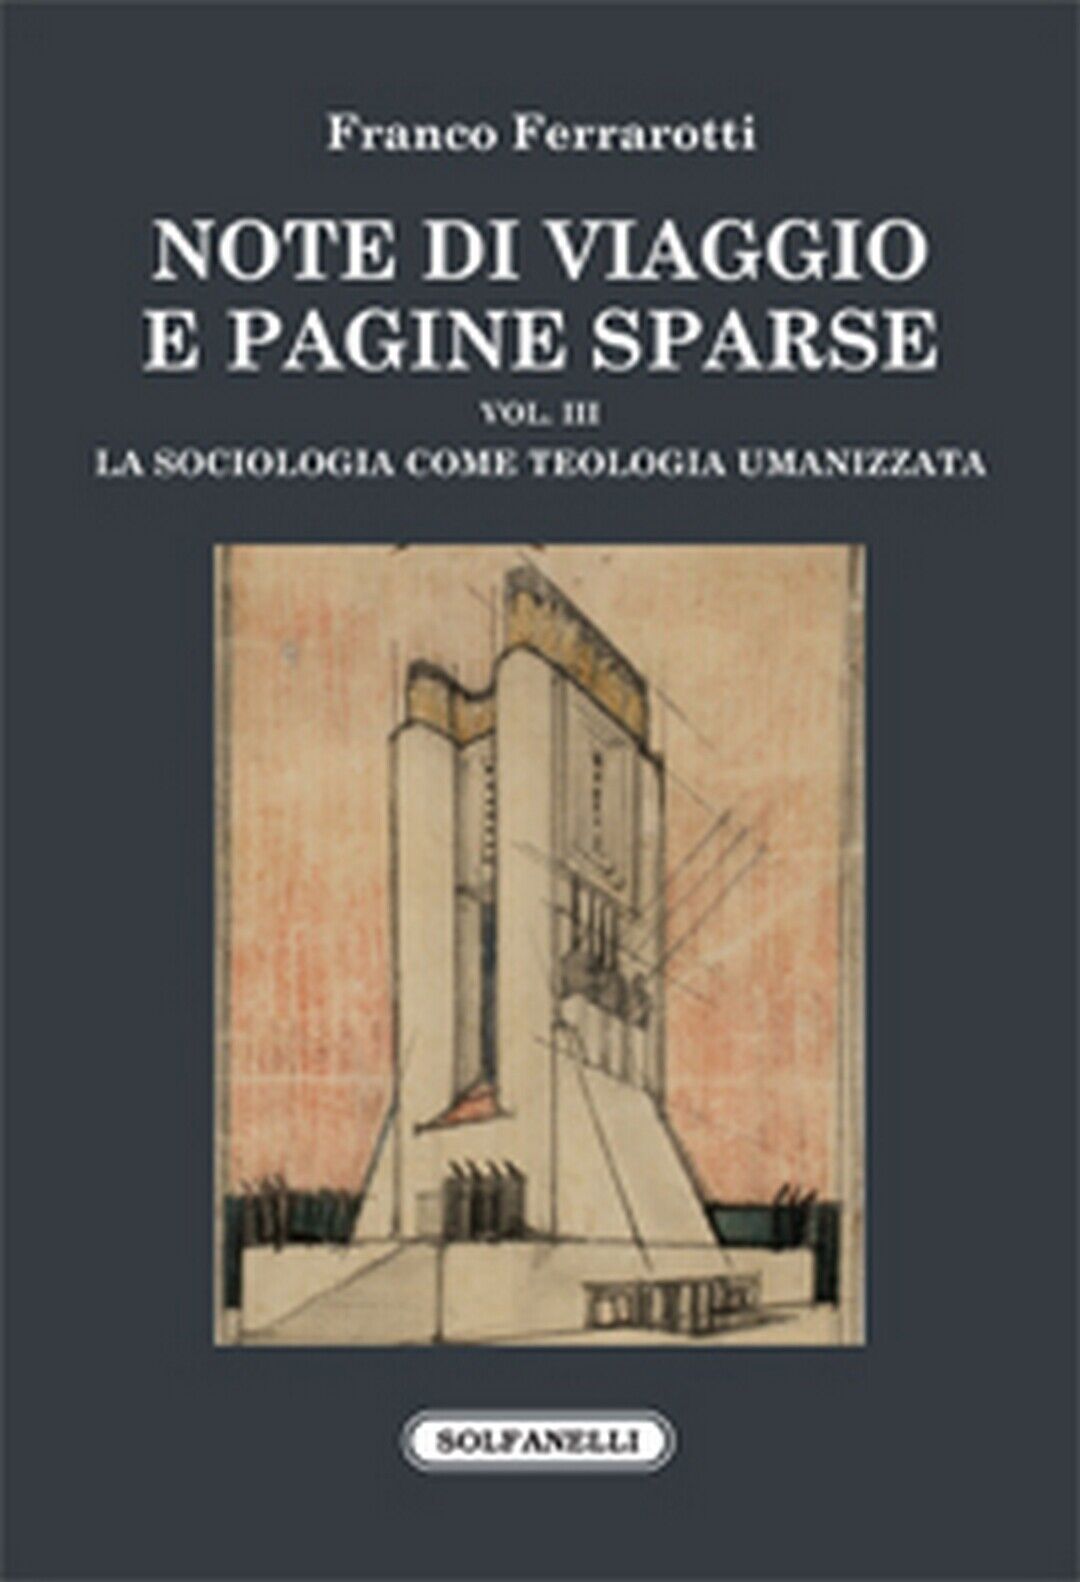 NOTE DI VIAGGIO E PAGINE SPARSE Vol. III -La sociologia come teologia umanizzata libro usato